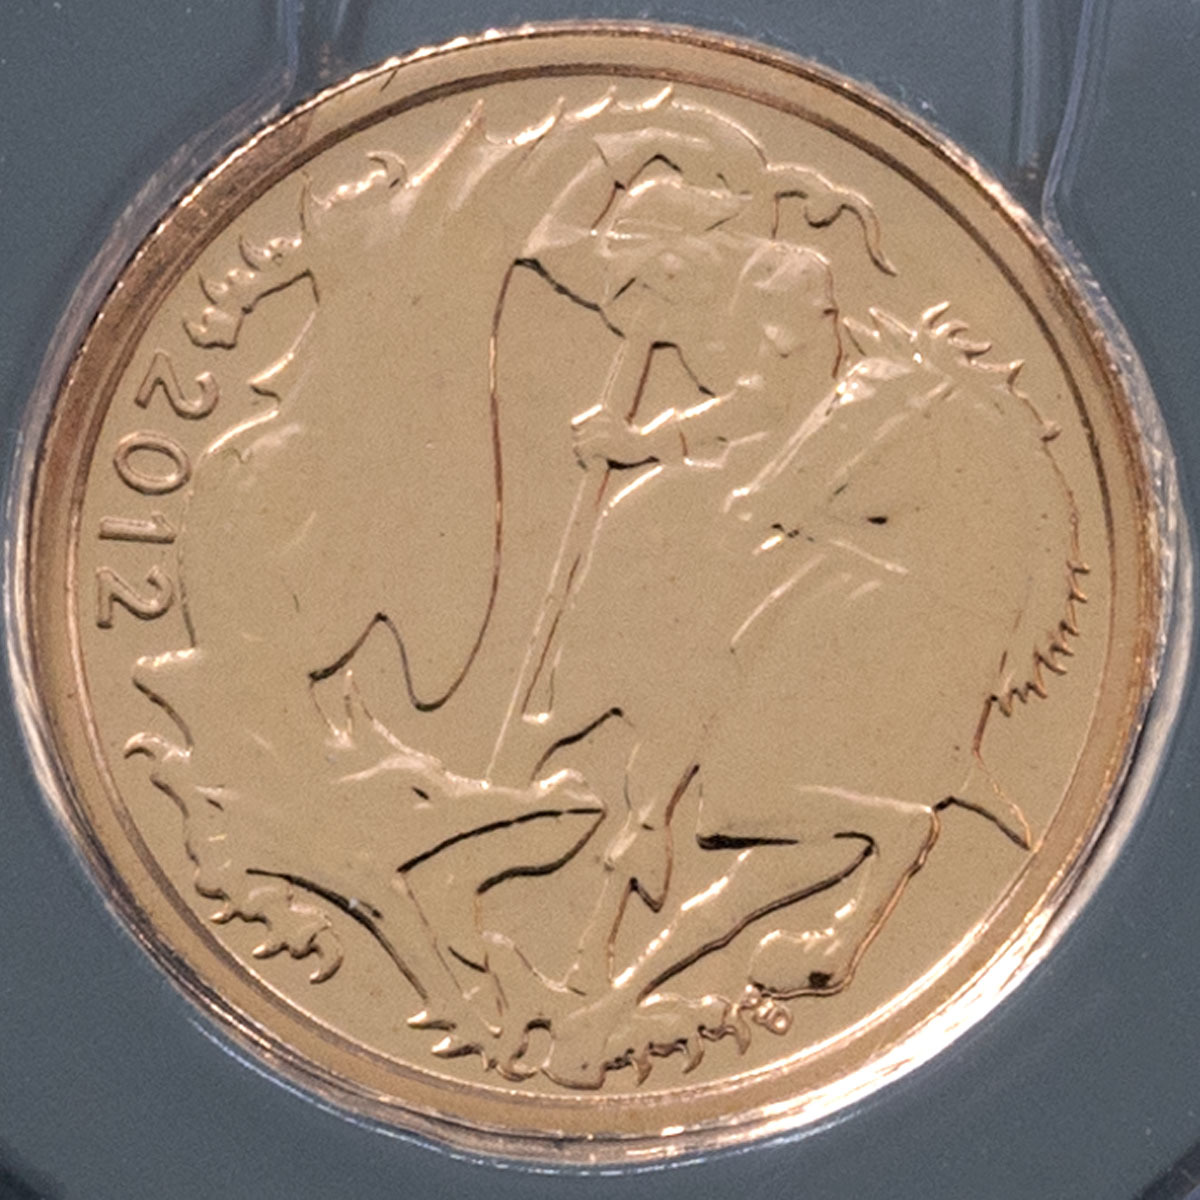 UKBQ12RN 2012 Gold Bullion Quarter Sovereign Diamond Jubilee Coin In Sleeve Reverse